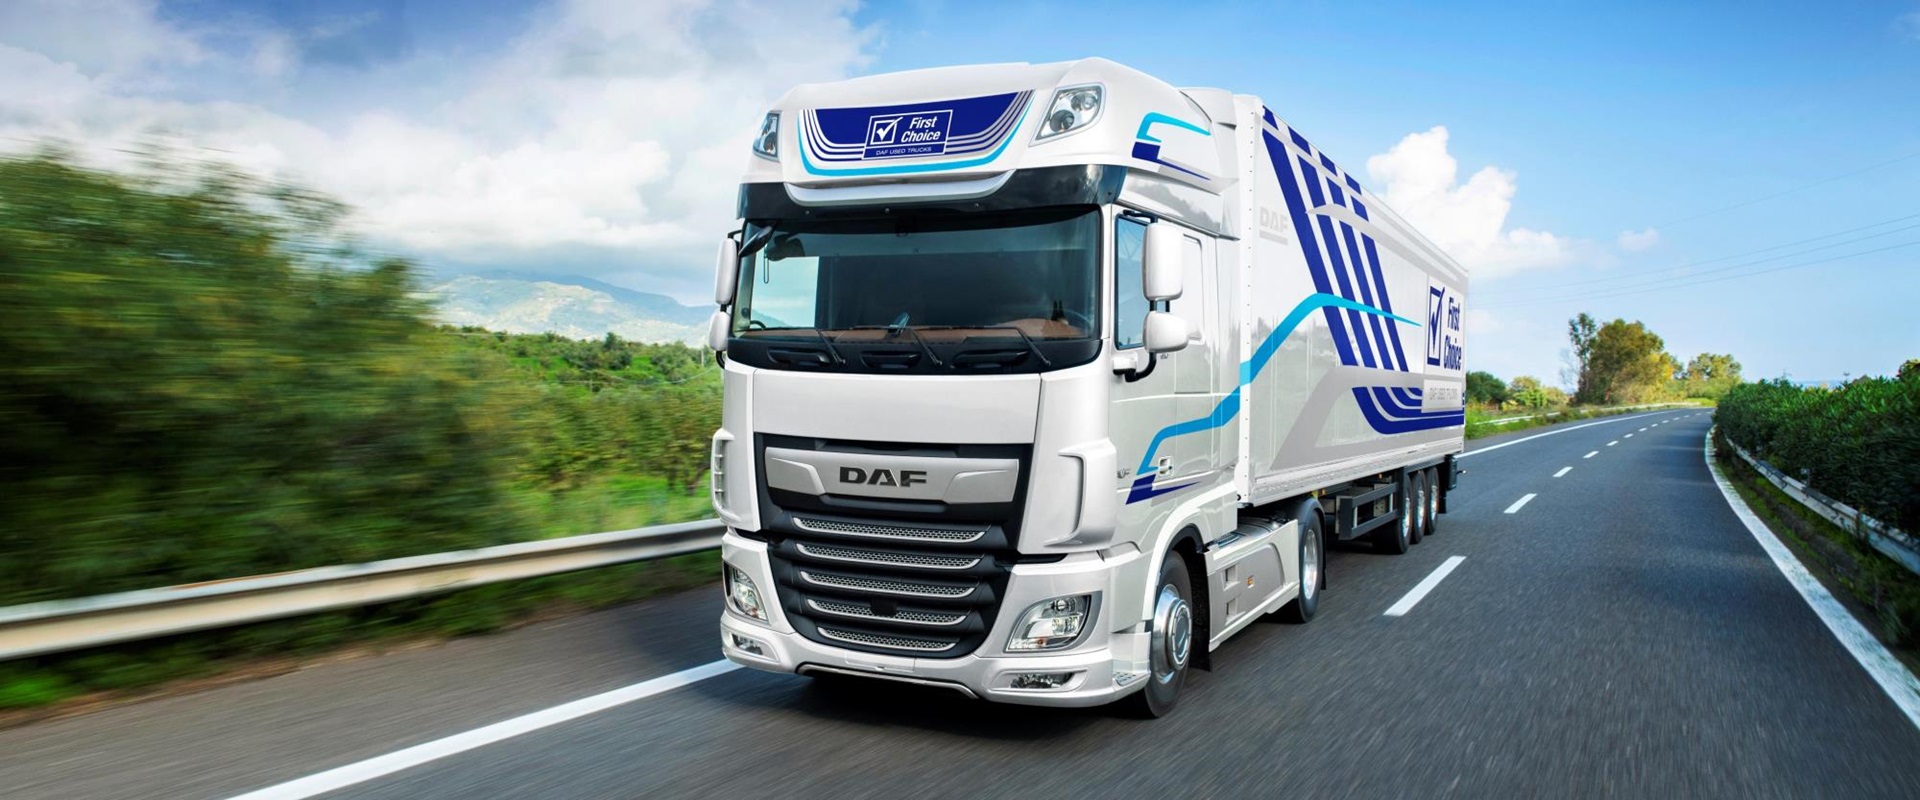 DAF-Used-Trucks-DAF-Euro-6-model-range-2017